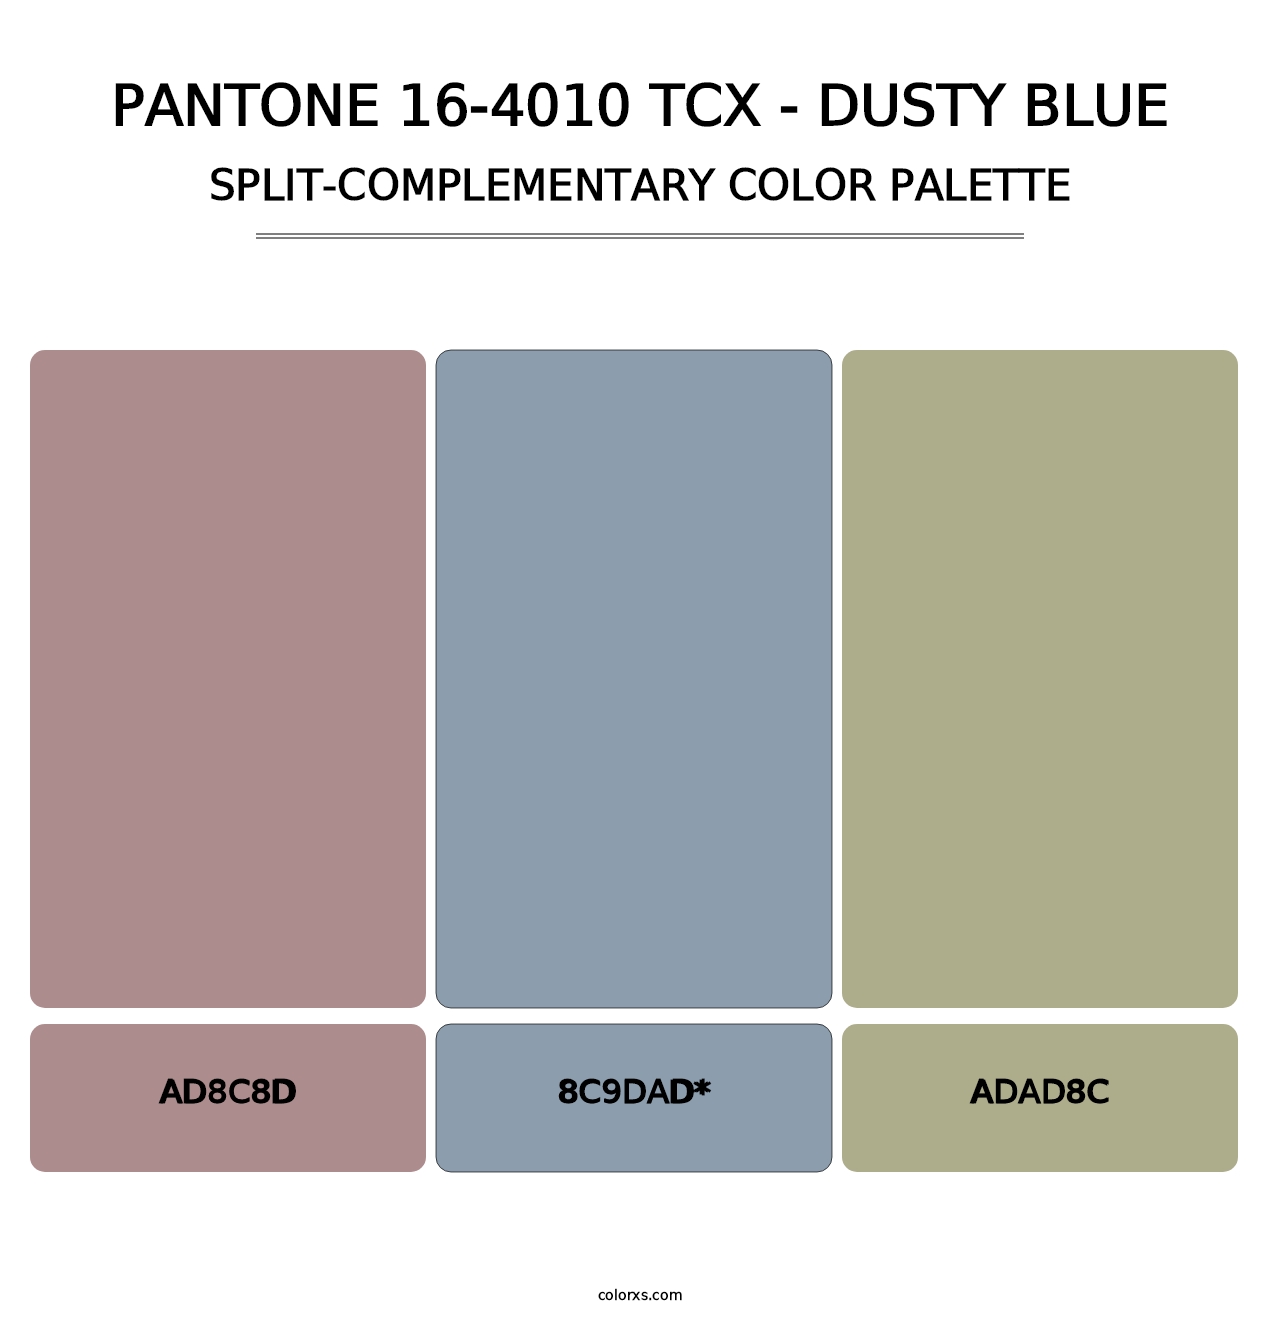 PANTONE 16-4010 TCX - Dusty Blue - Split-Complementary Color Palette